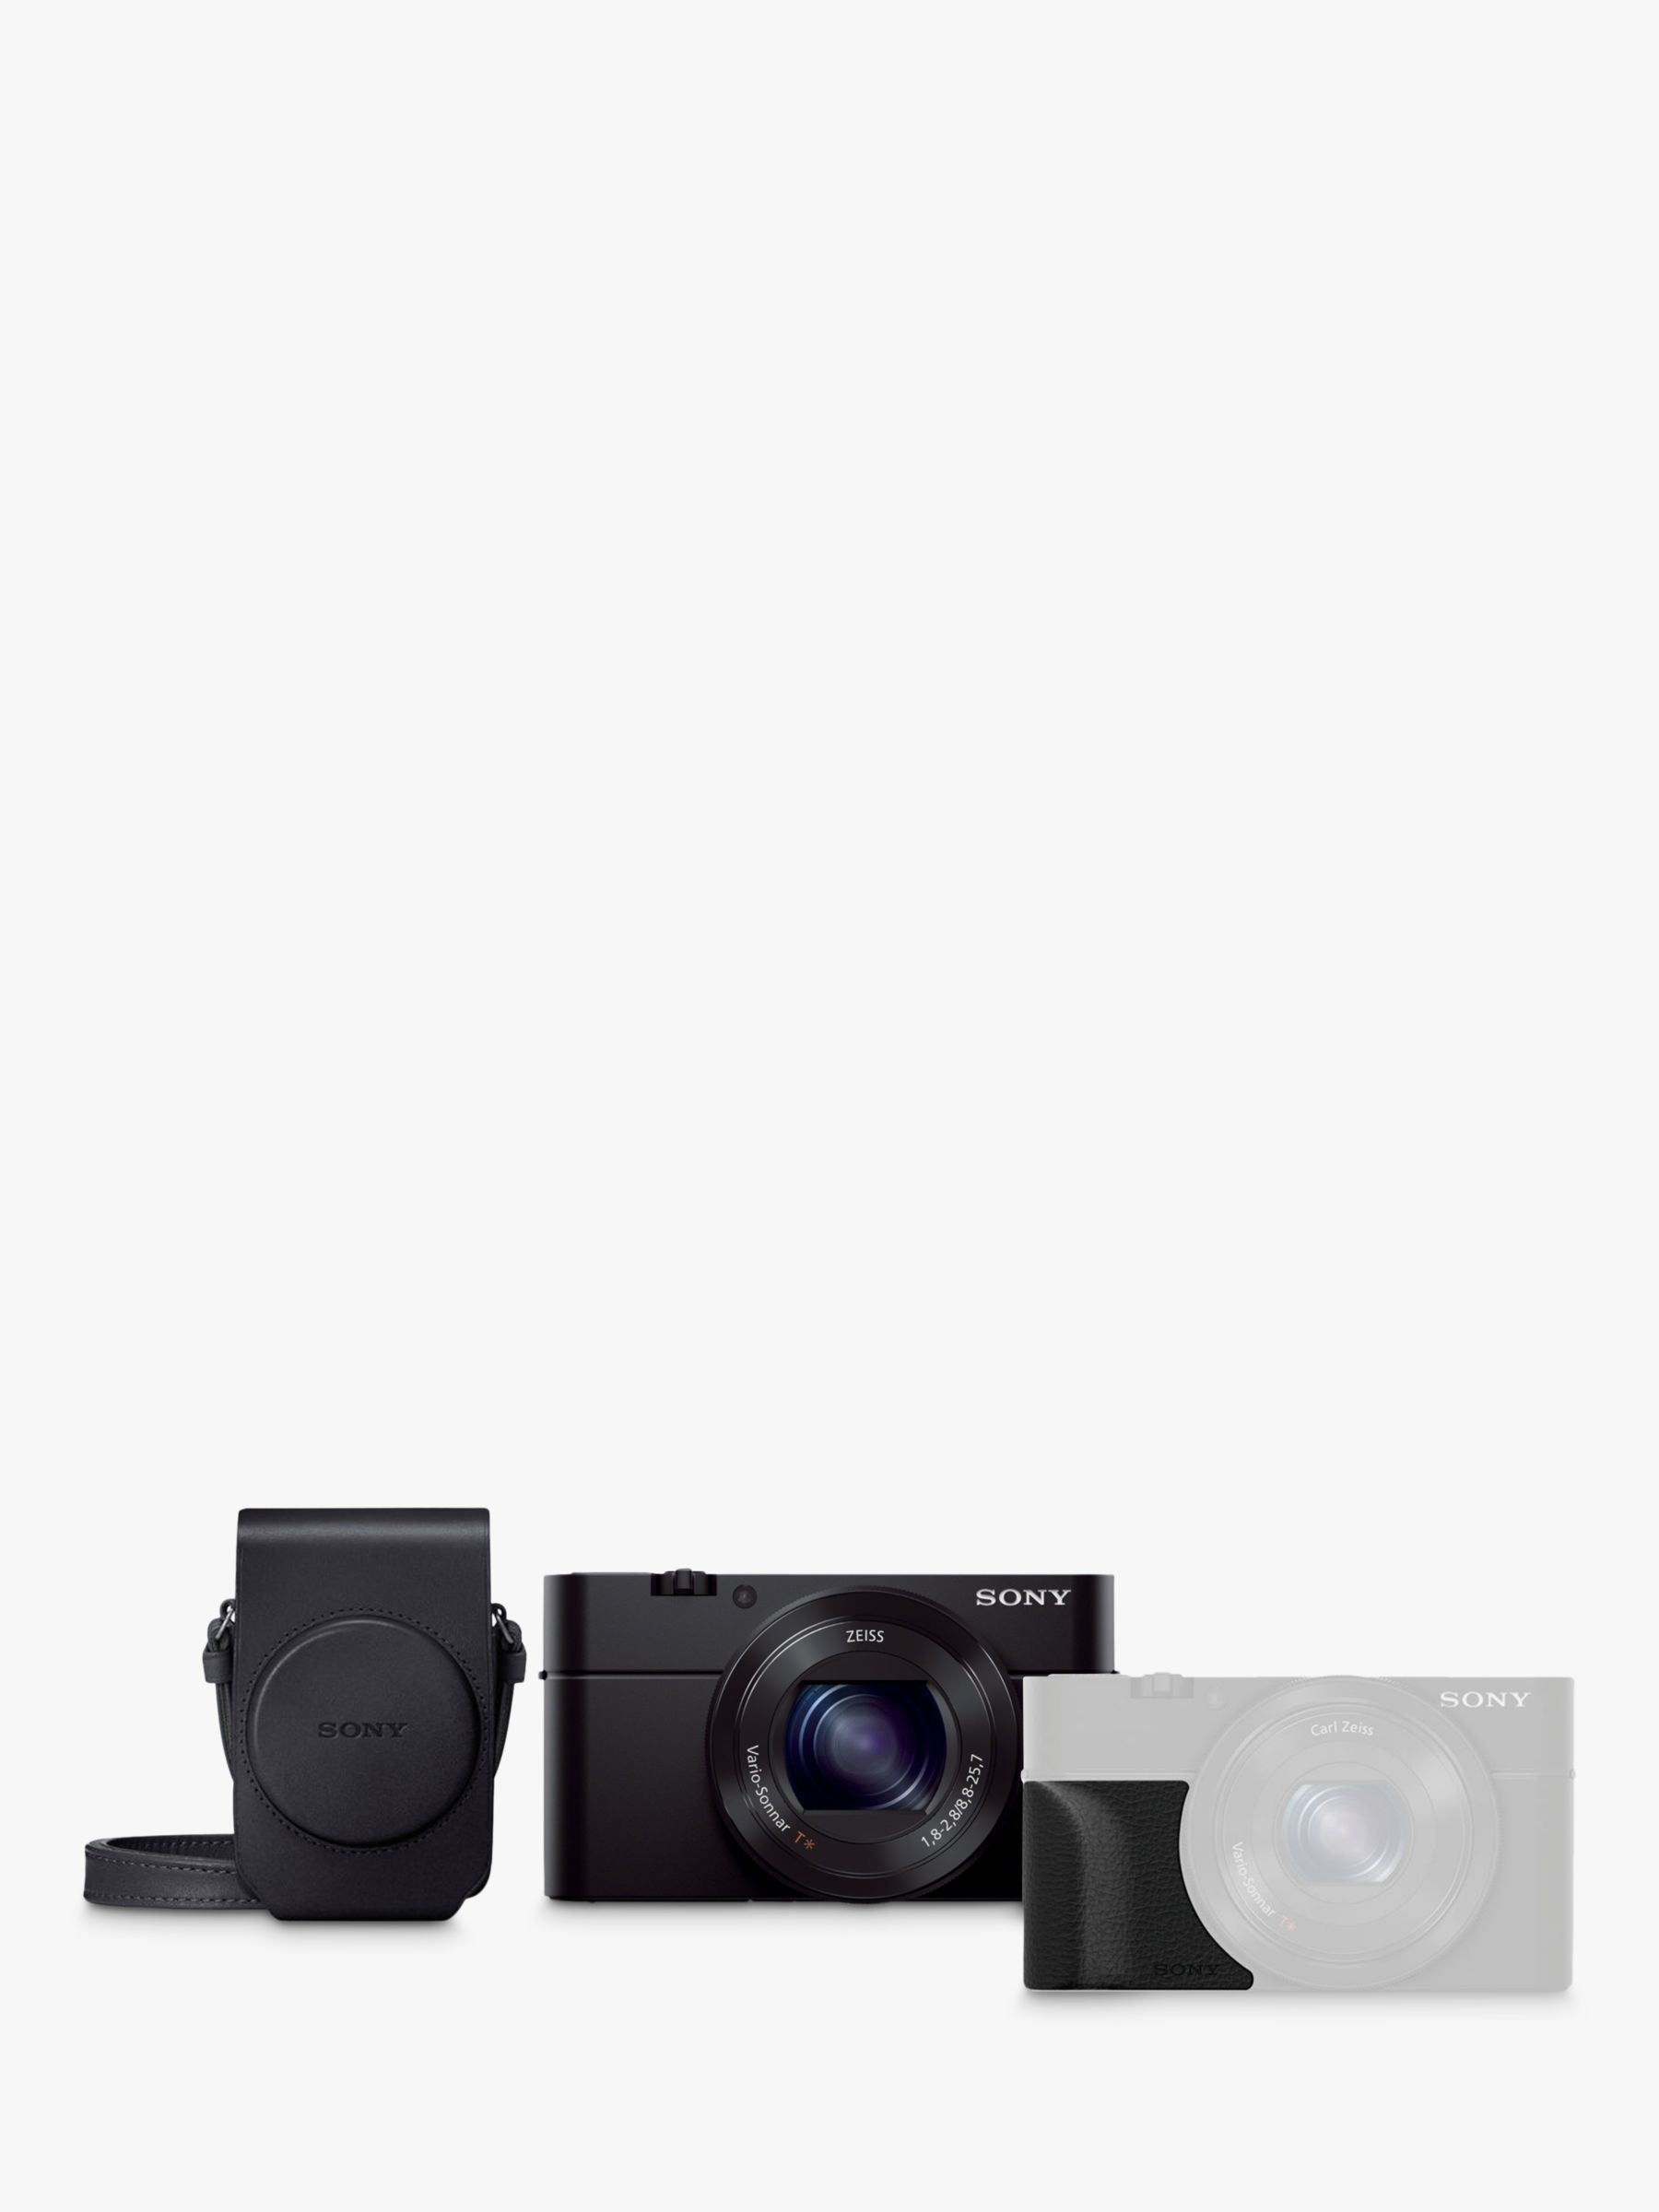 Sony Cyber-shot DSC-RX100 III Camera Review